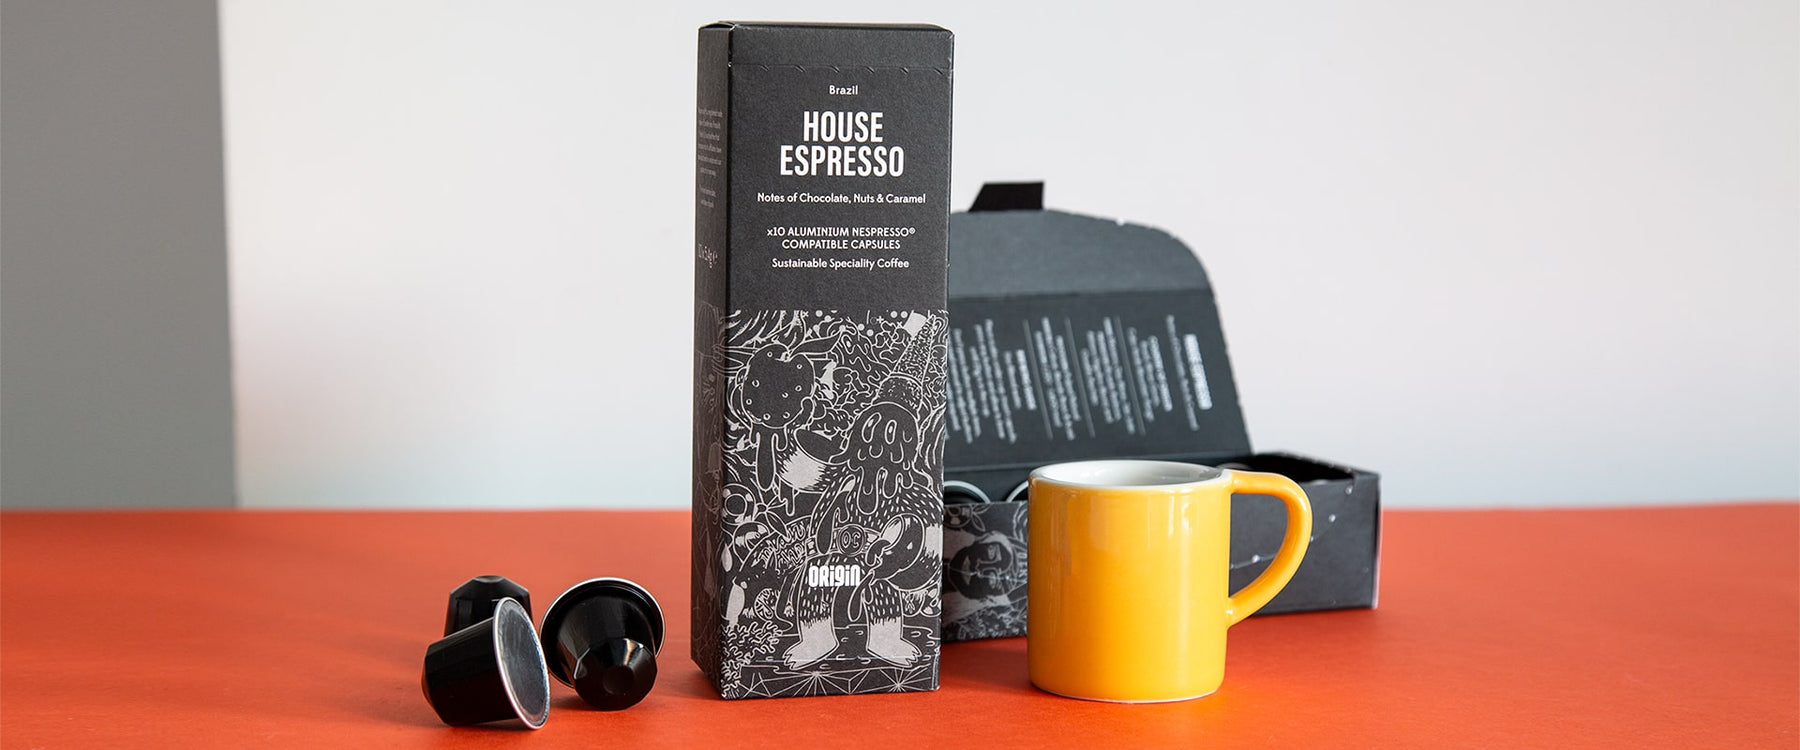 Inside the Best Coffee Pod Box - Origin Coffee Roasters